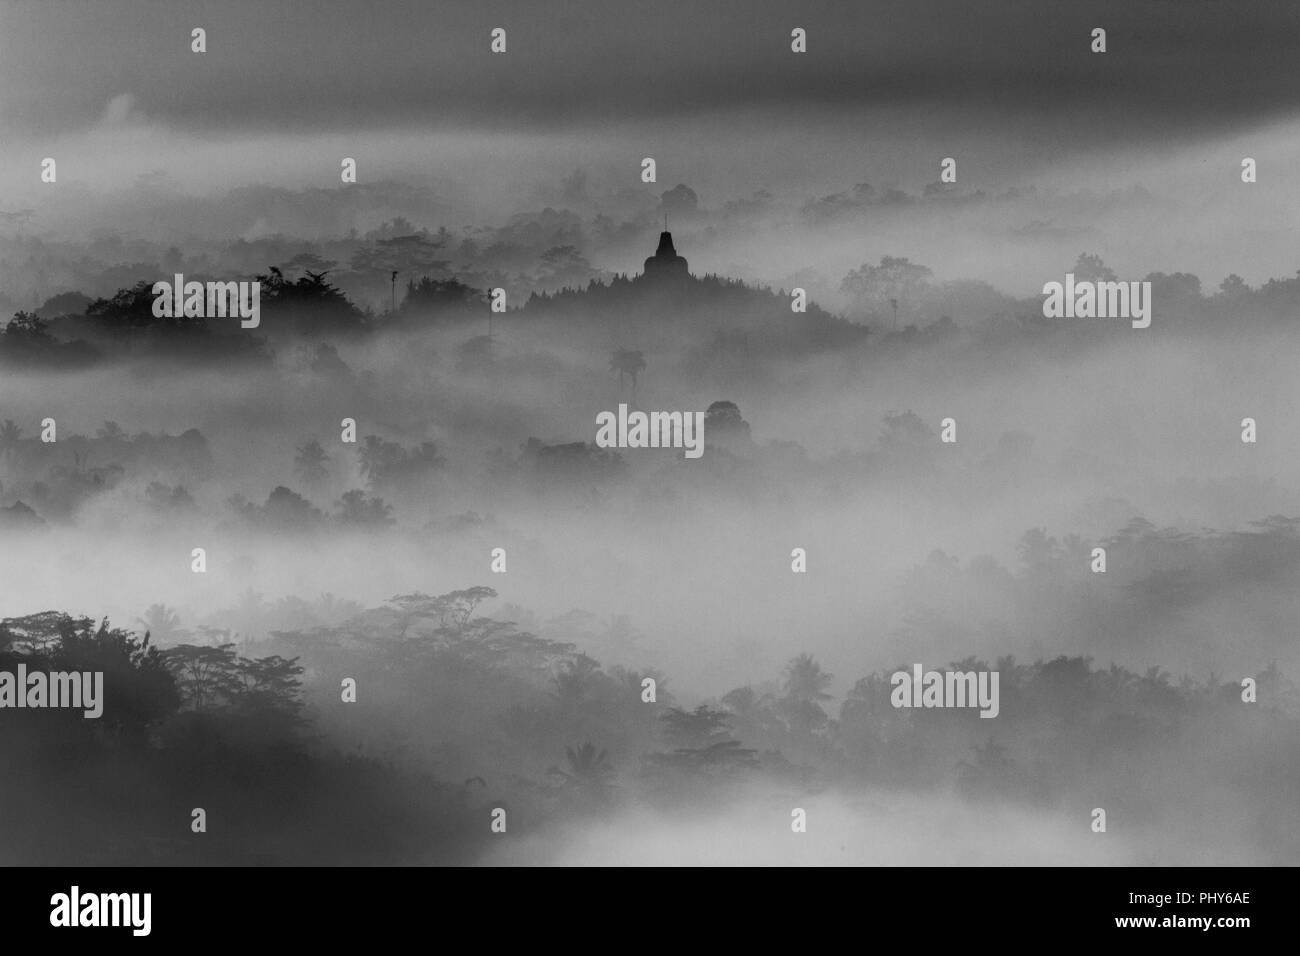 Silhouette des Borobudur-Tempels umgeben von Nebel und Wald in Schwarz-Weiß-Fotografie Stockfoto